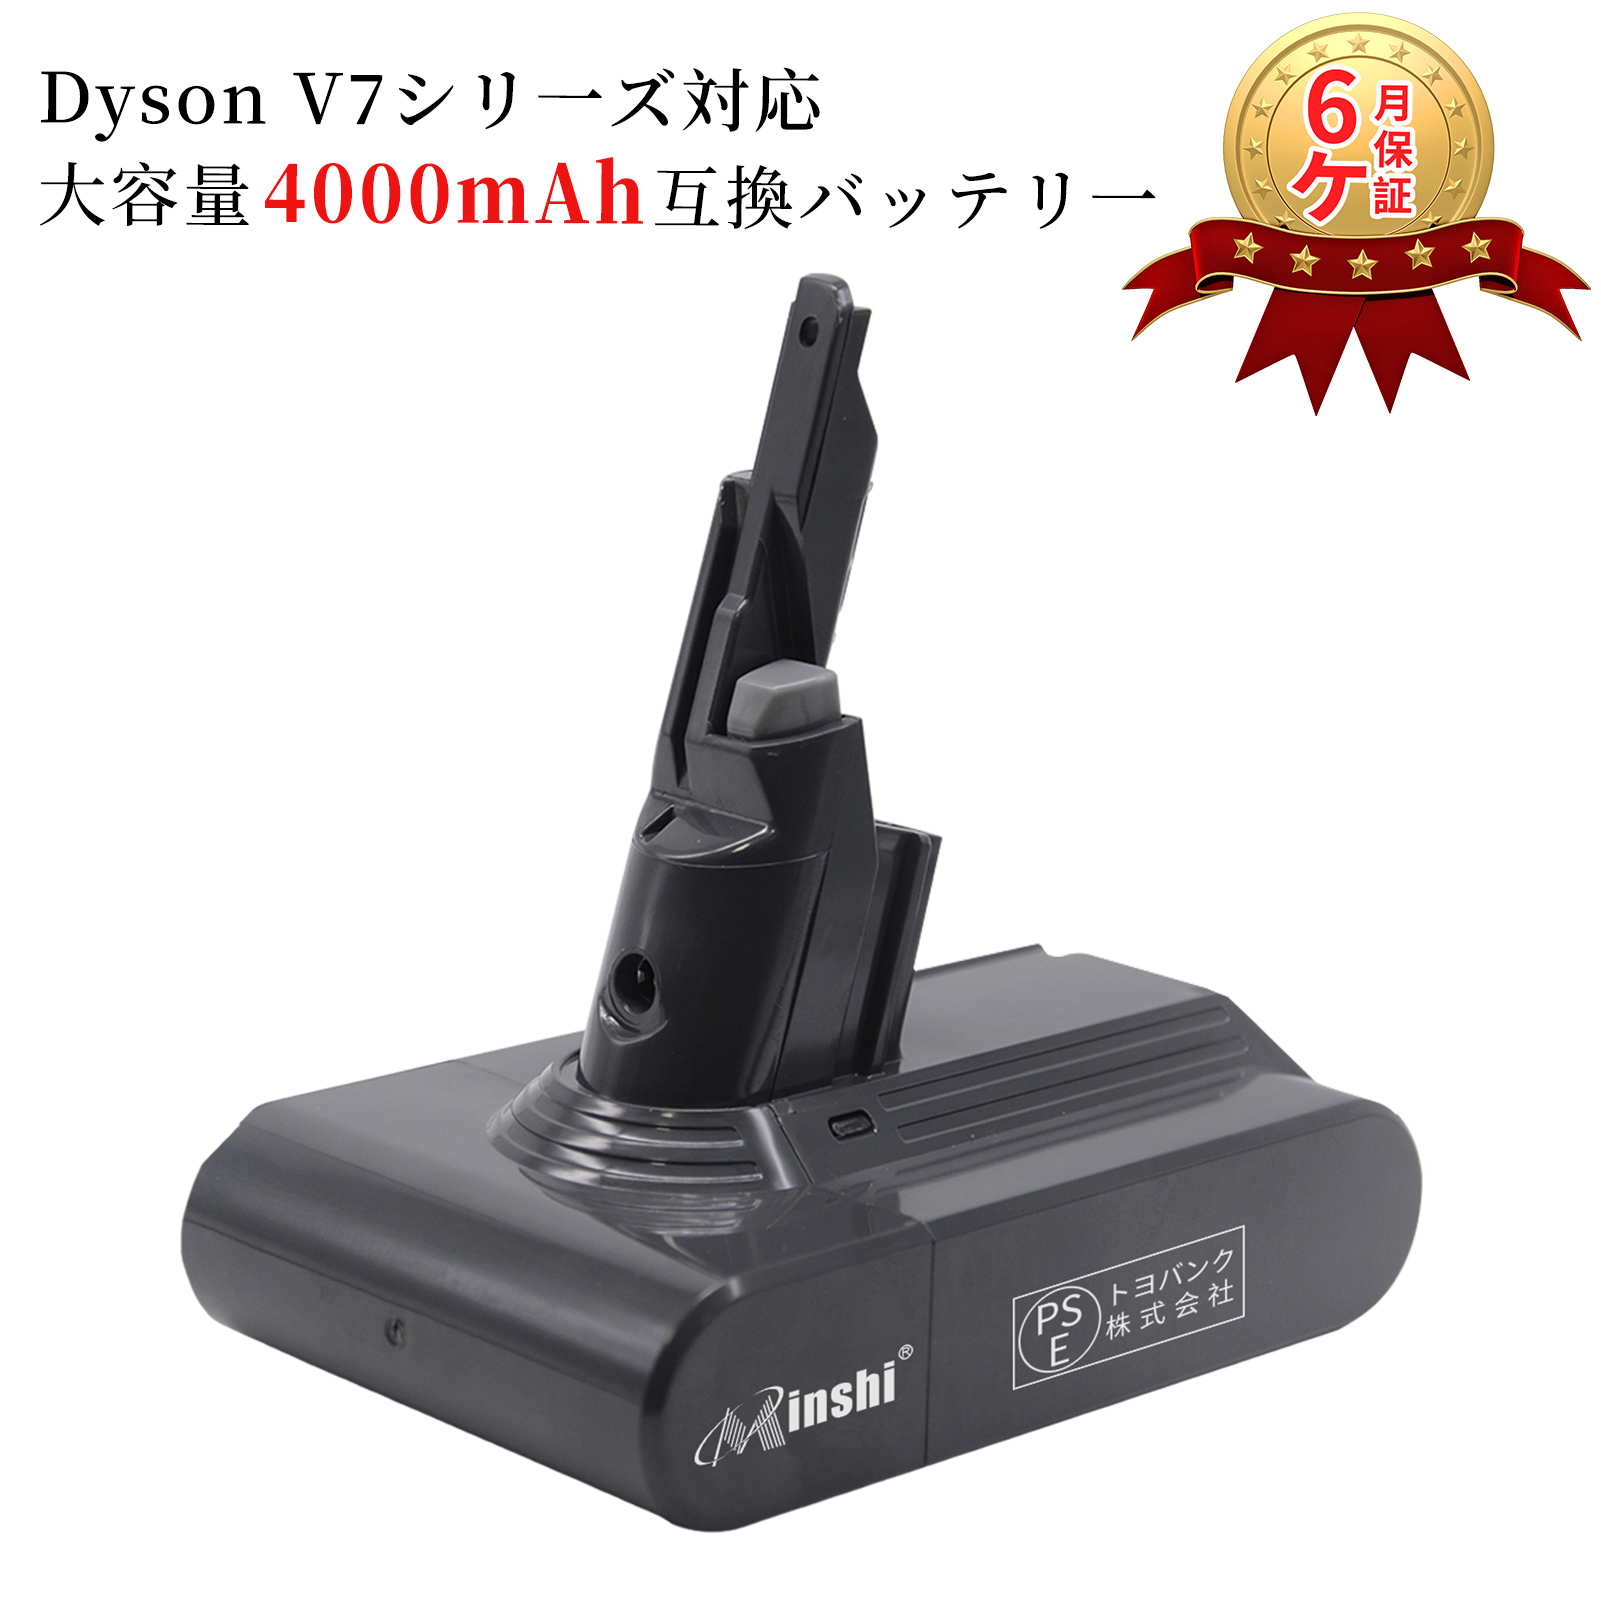 進化版 ダイソン dyson v7 sv11 互換 バッテリー Dyson V7 Motorhead 対応 21.6V 4000mAh バッテリー